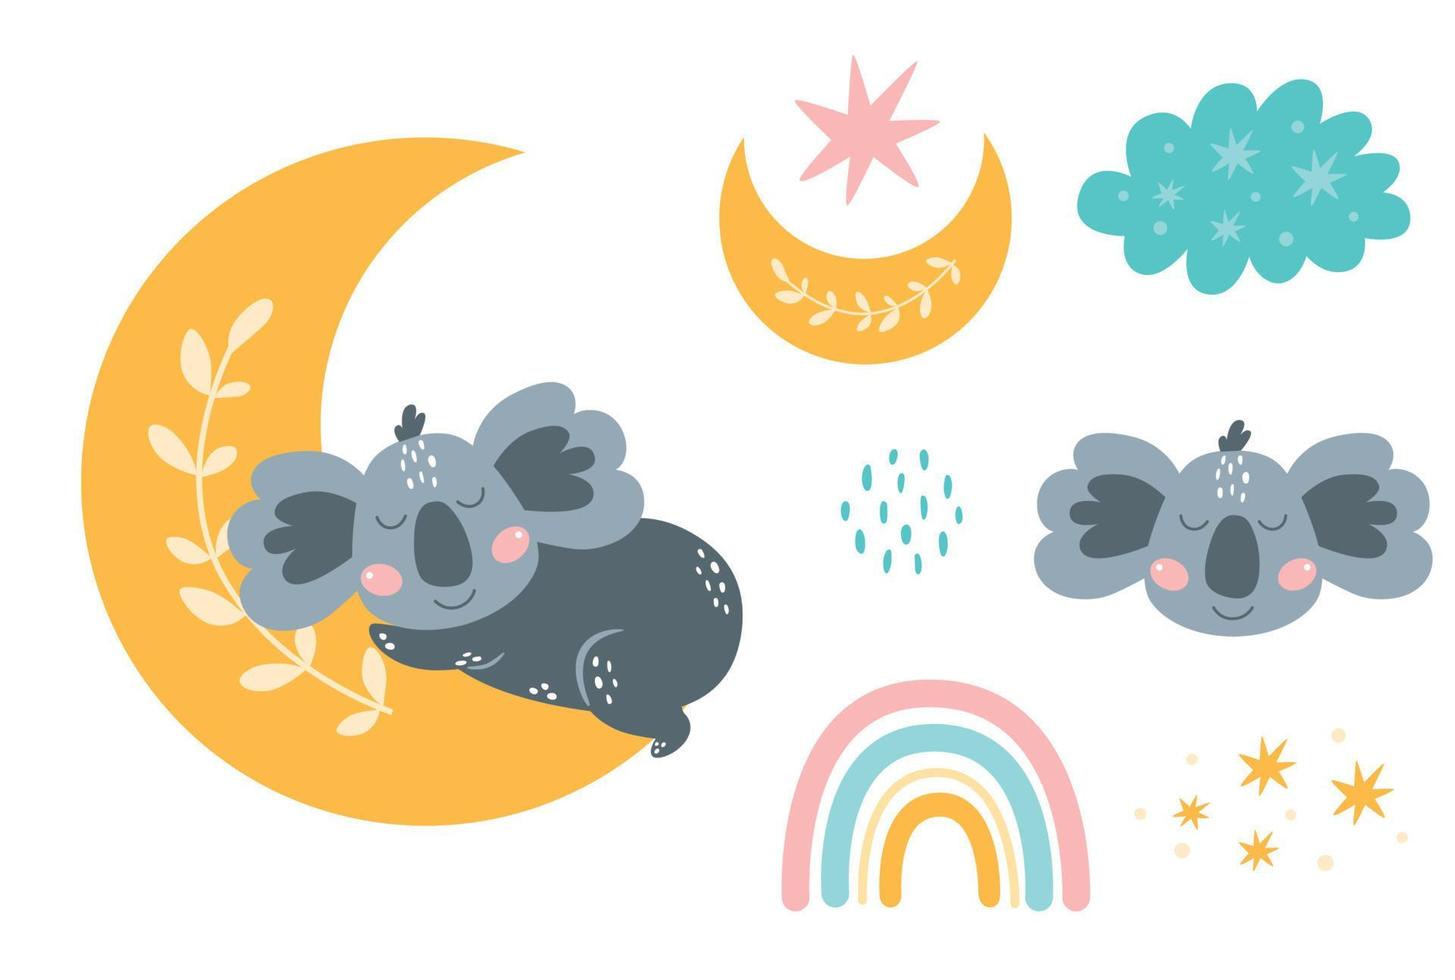 gute nacht isoliertes element. süße Träume Cliparts. Mond, träumender Koala, süßer Bär, Baby-Regenbogen. kinder schlafen sammlung isoliert. süßes tier im cartoon-stil. Vektor-Illustration. Koala-Kopf. vektor